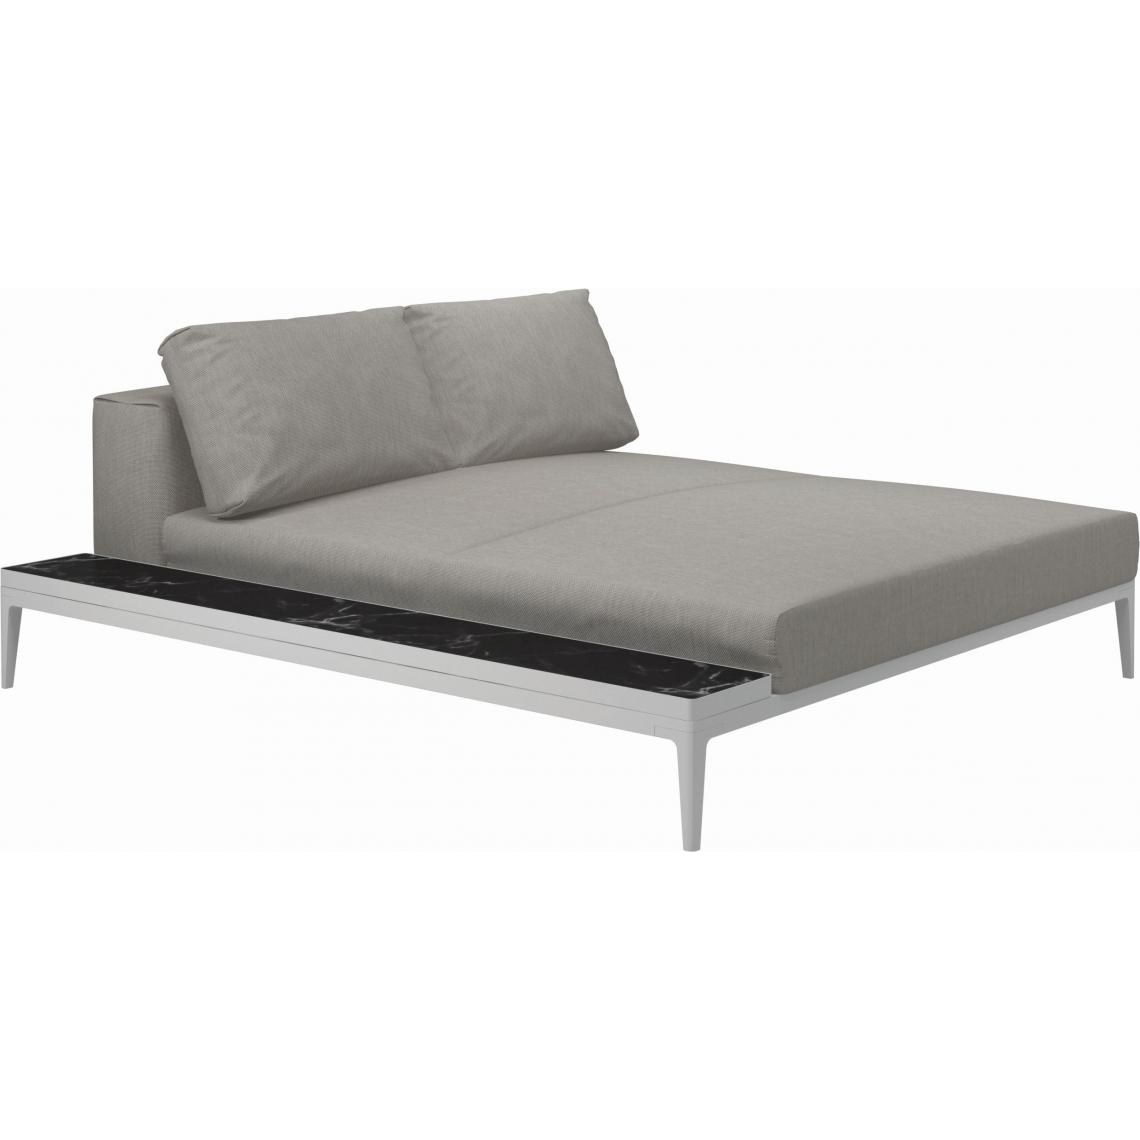 Gloster - Canapé Grid Module de relaxation avec table - GlosterGridNeroCeramic - blanc - Fife Grey - Ensembles canapés et fauteuils